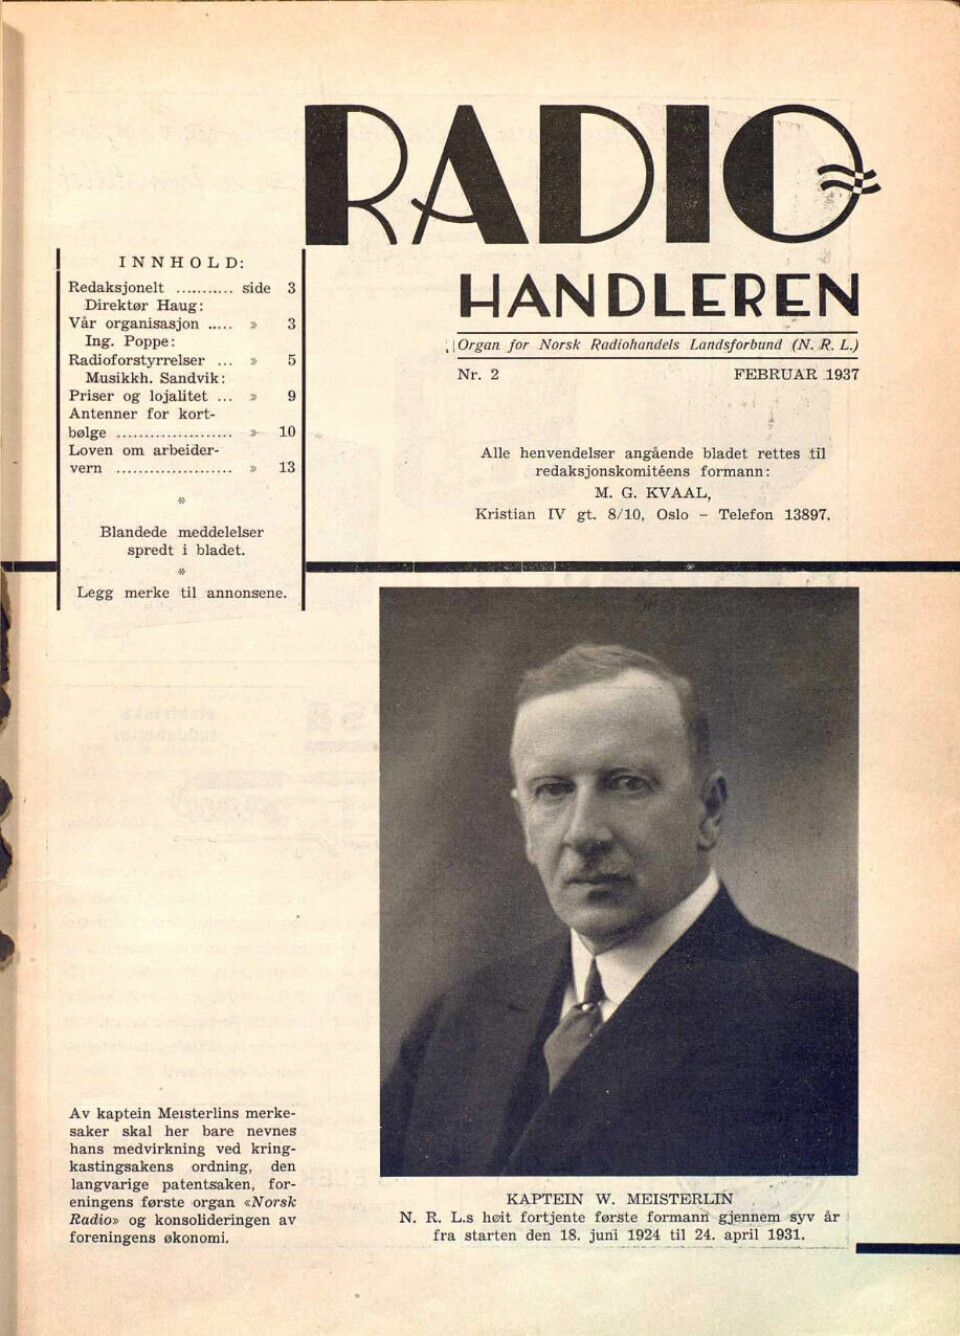 Radiohandleren nr. 2/1937 mangler i vårt historiske arkiv de to første omslagssidene. Skjermdump fra elektronikkbransjen.no/historiskarkiv.